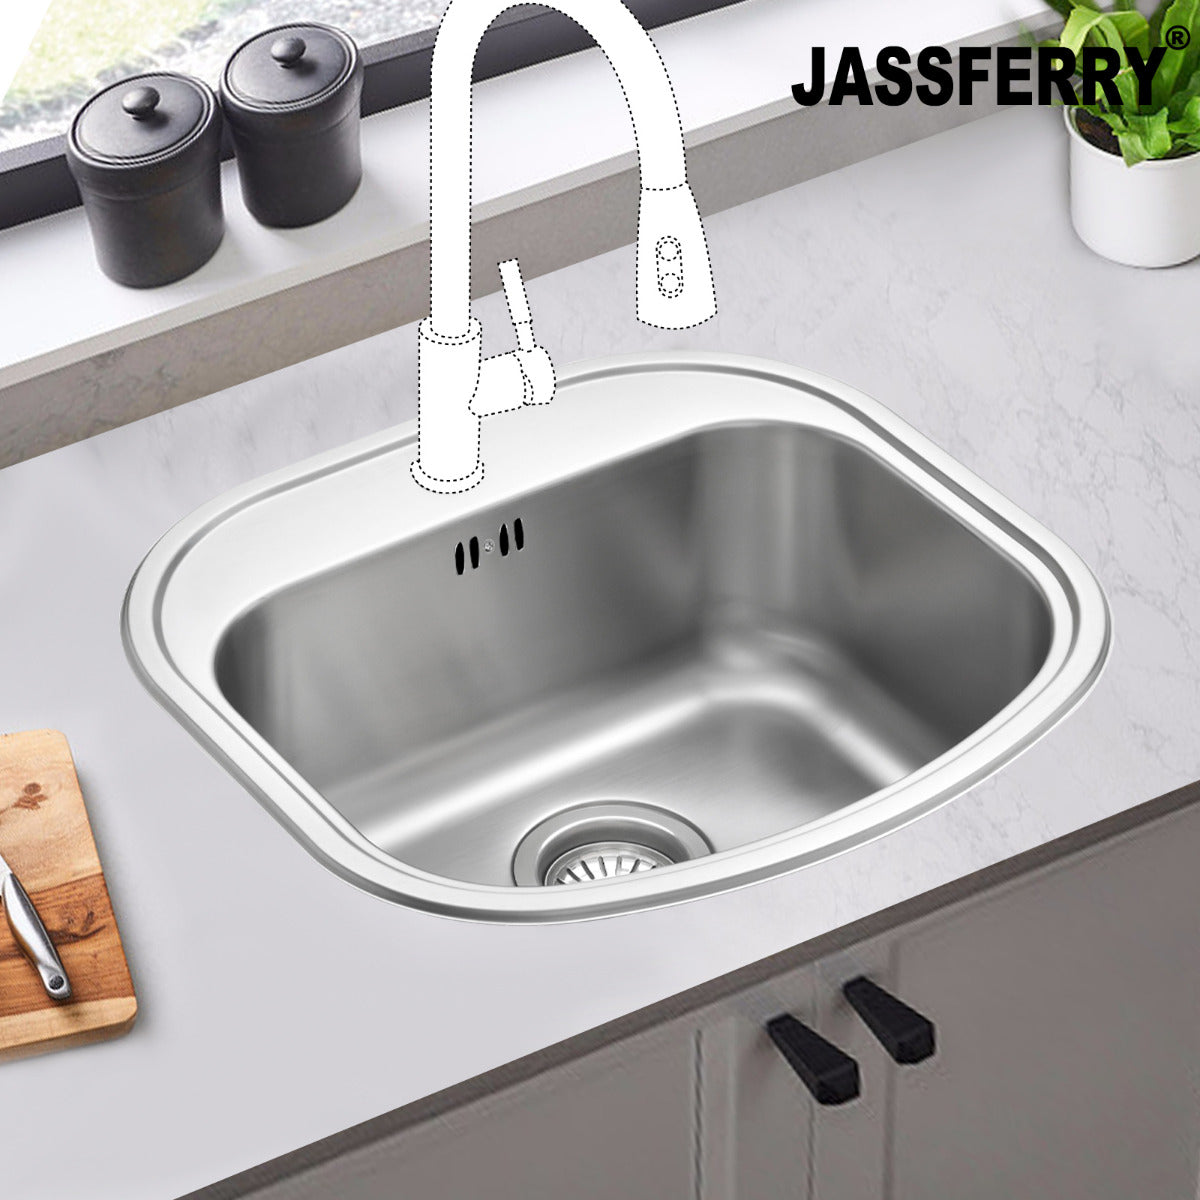 JassferryJASSFERRY Stainless Steel Single Bowl Kitchen Sink with Pre-drilled Tap HoleKitchen Sink